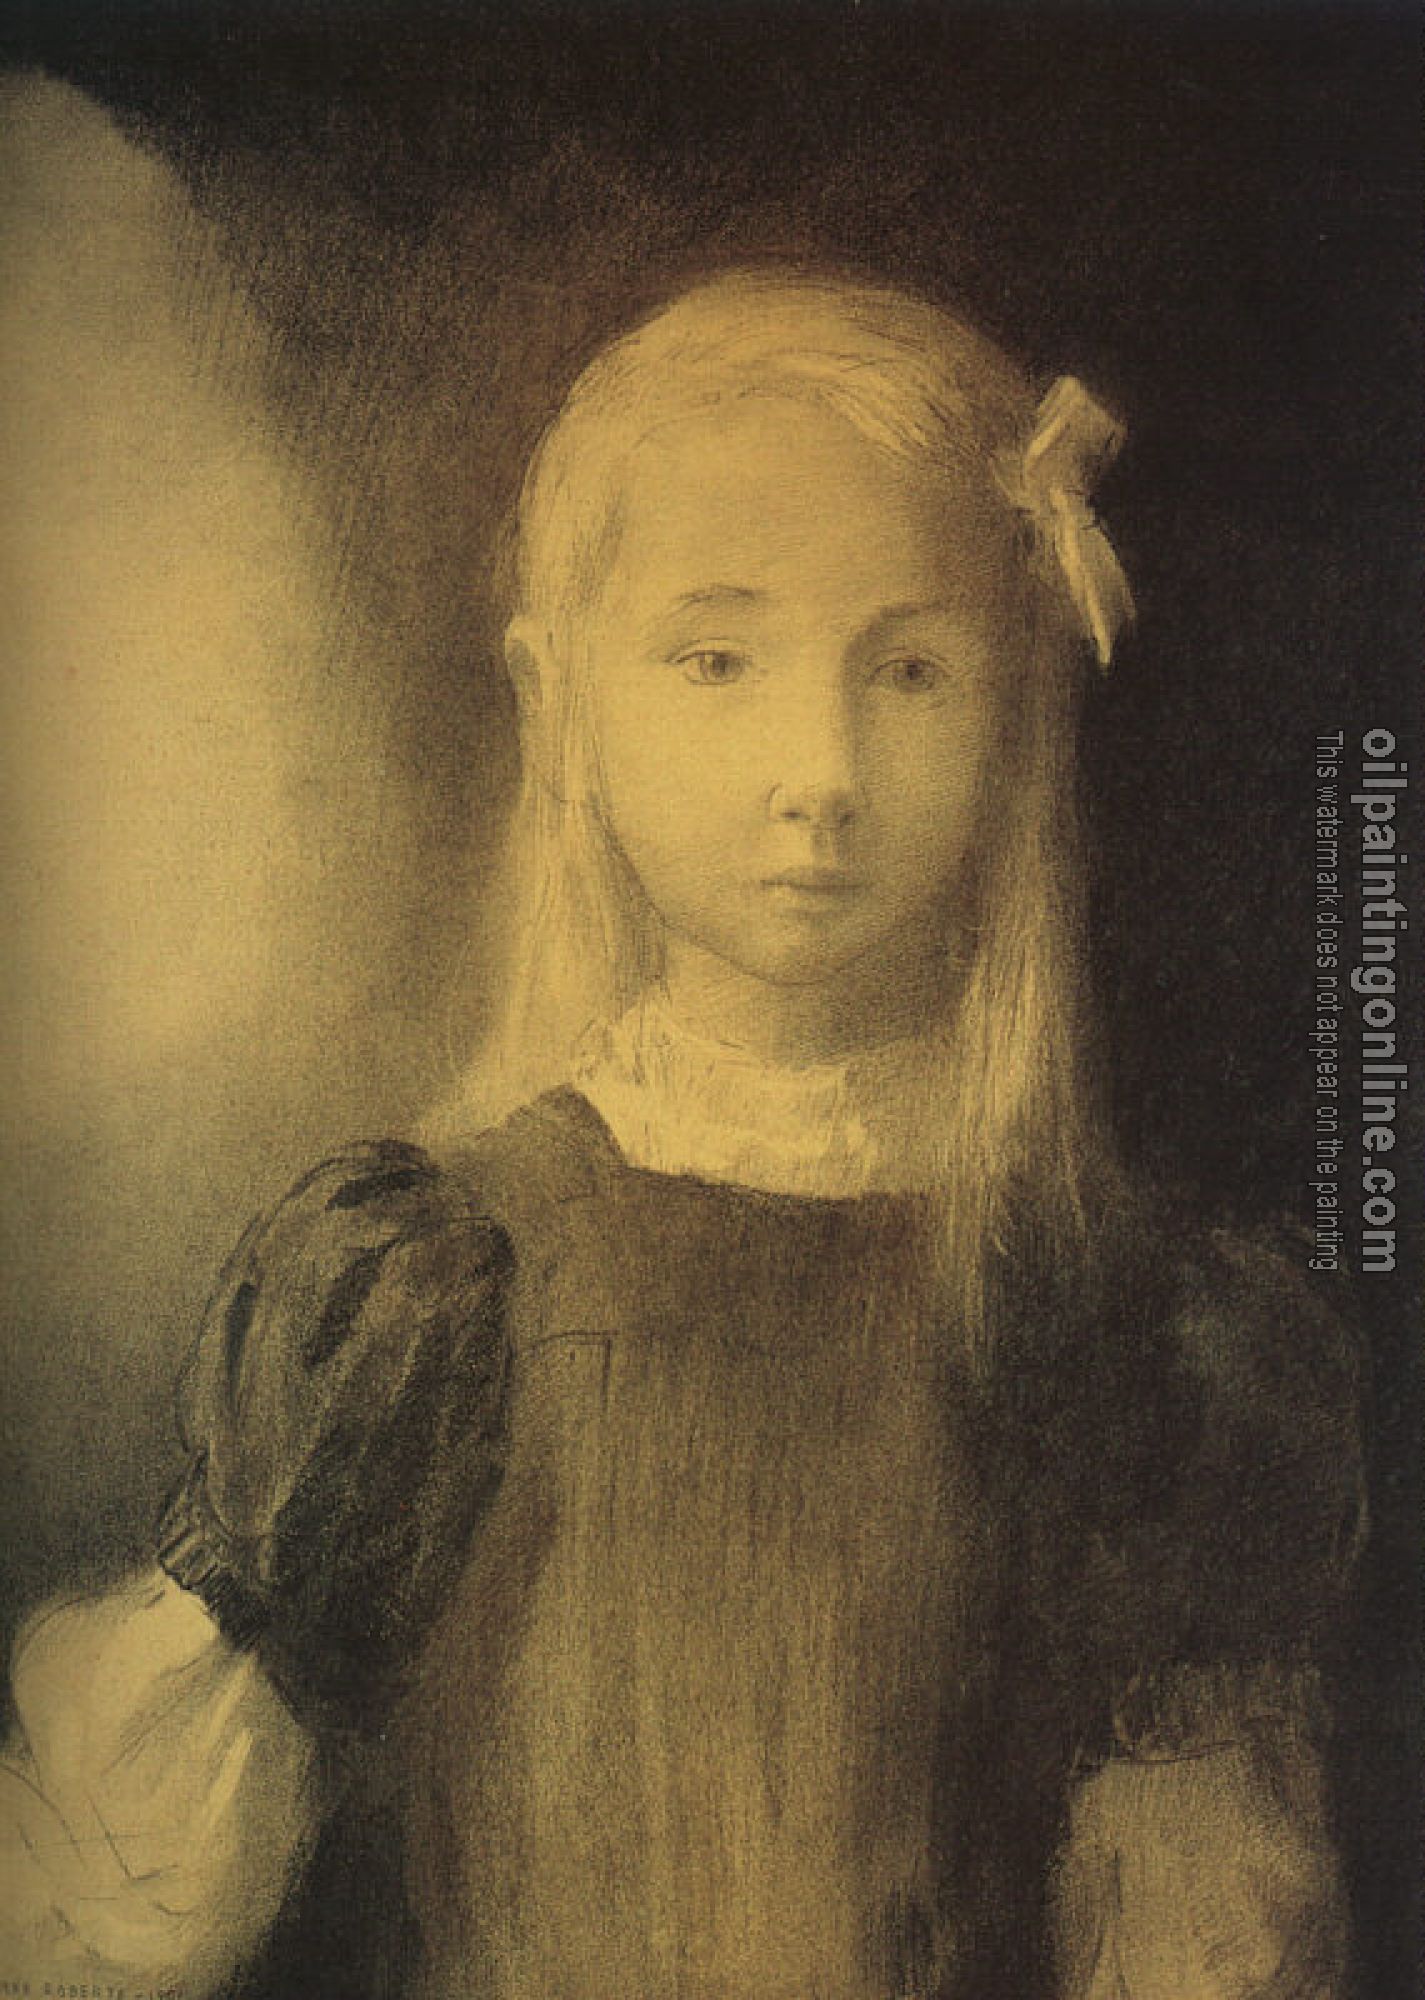 Redon, Odilon - Portrait of Mademoiselle Jeanne Roberte de Domecy